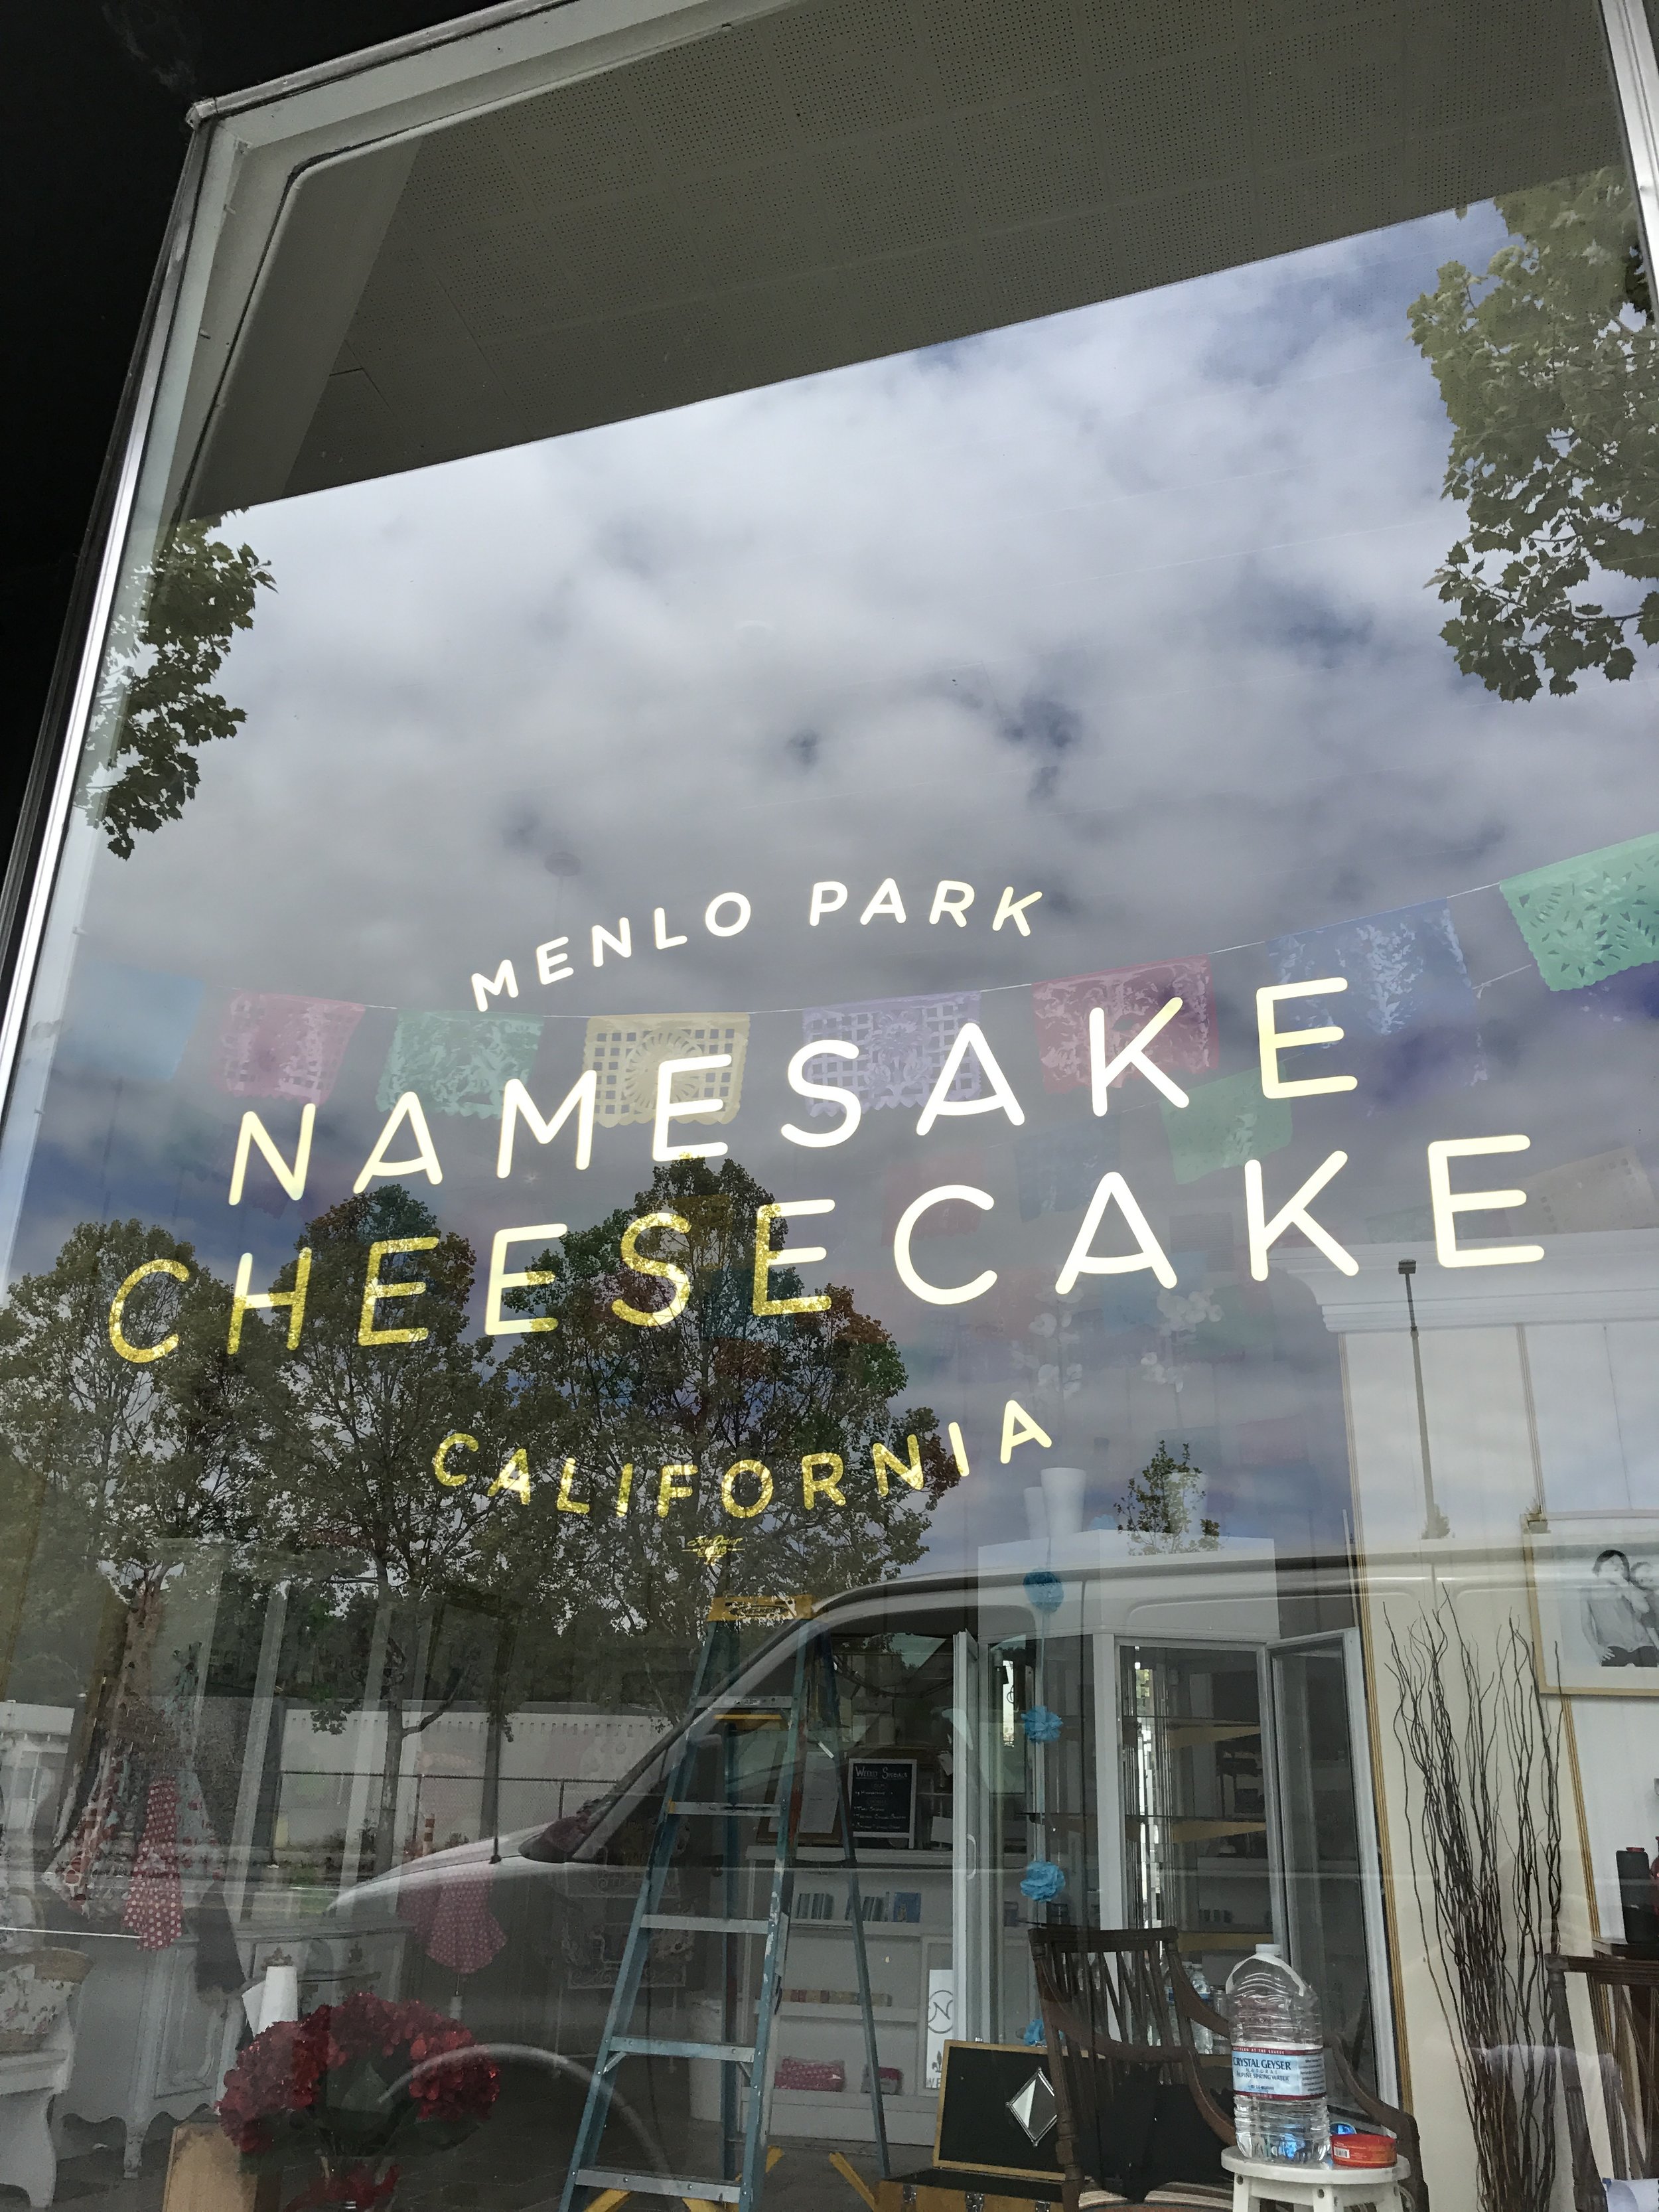 Namesake Cheesecake Menlo Park